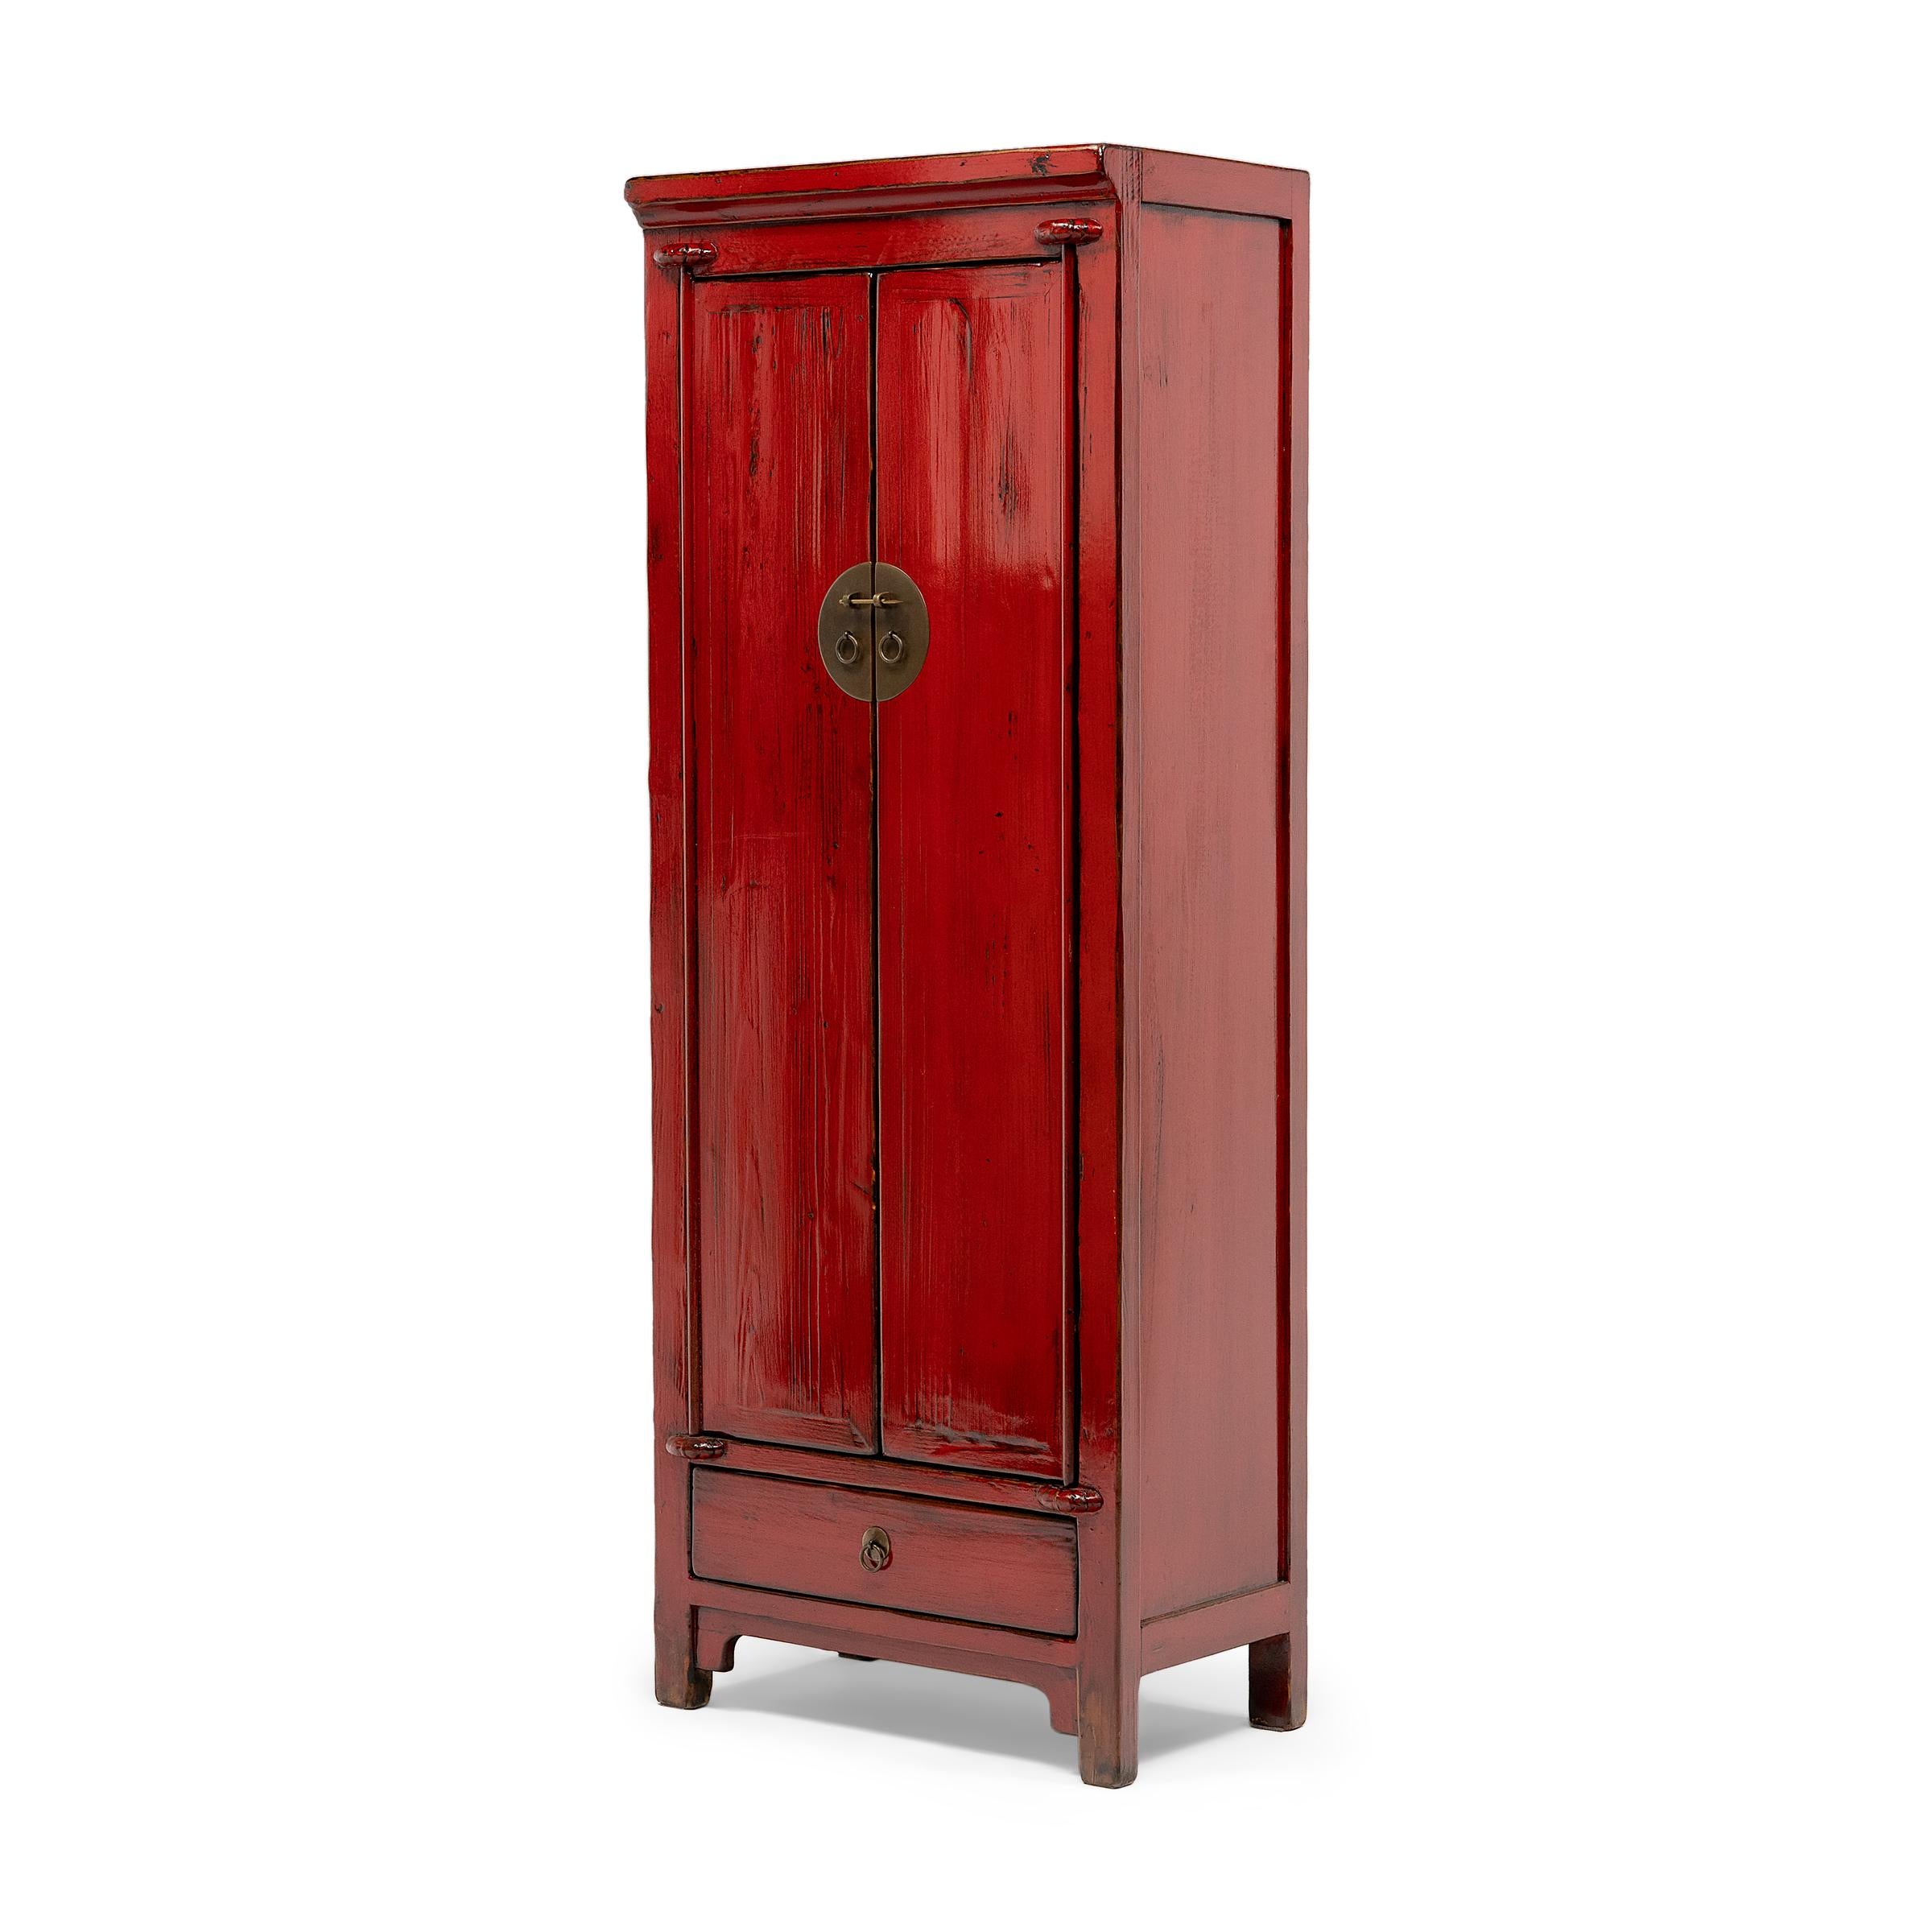 L'essence du mobilier chinois traditionnel s'exprime pleinement dans la simplicité et la présence gracieuse de cette armoire du XVIIIe siècle fabriquée dans la province de Shanxi. Fabriqué en bois de pin selon des techniques de menuiserie